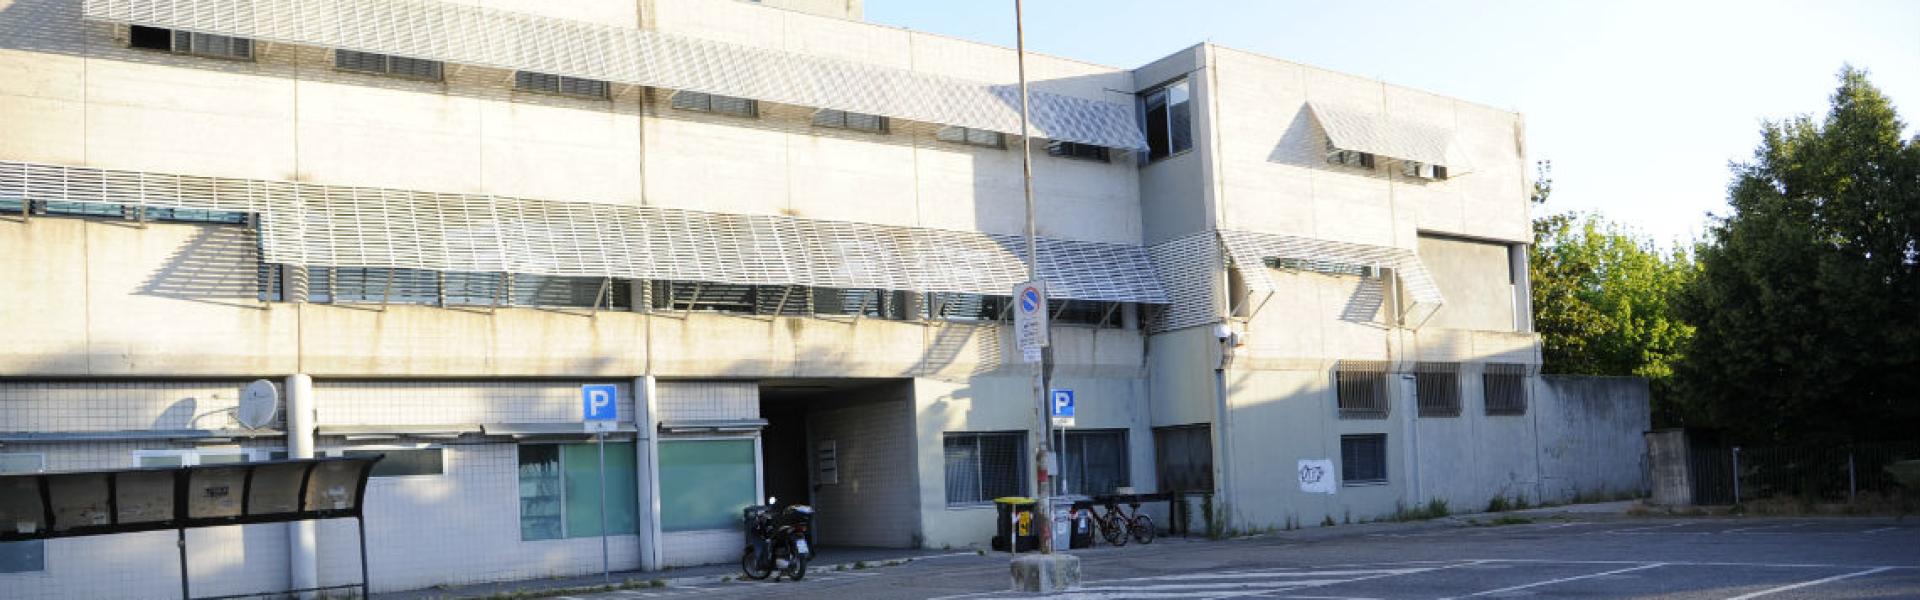 Ufficio Contravvenzioni - Polizia Municipale di Rimini